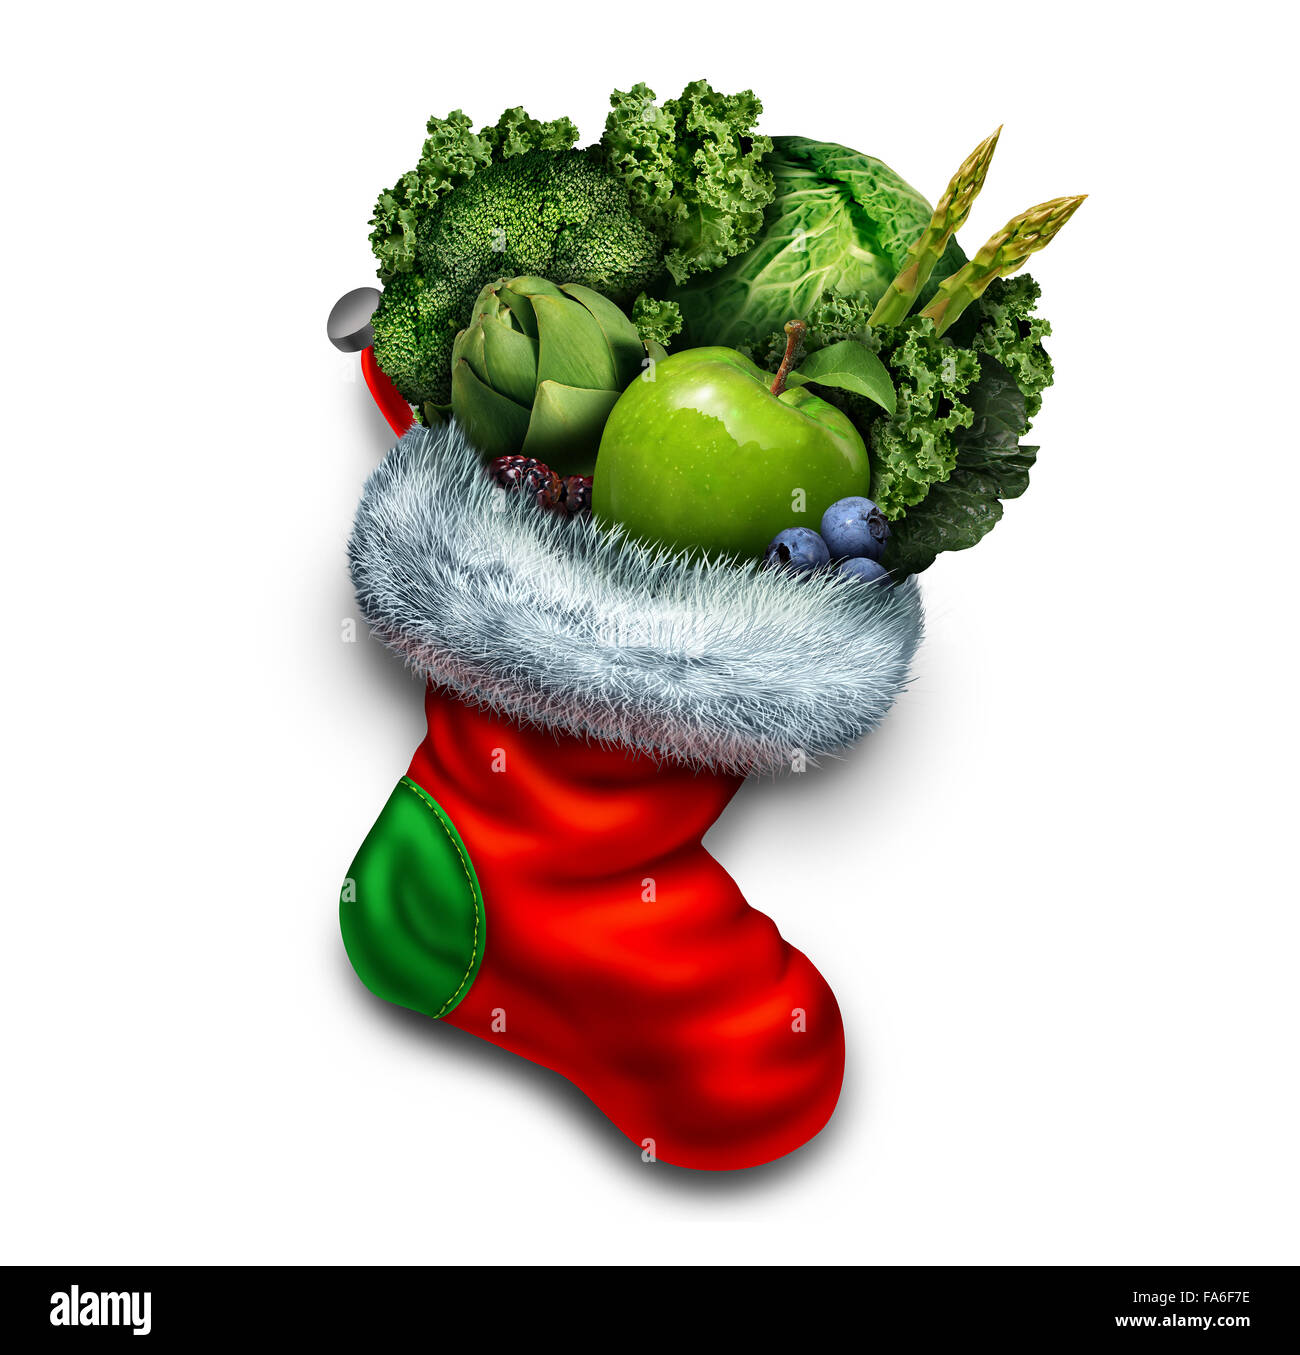 Vacances de manger sain et nouvel an dieting résolution dans un groupe de légumes verts et de fruits frais dans un bas de Noël rouge comme un symbole de fête d'un cadeau ou végétarien remise en forme d'hiver icône. Banque D'Images